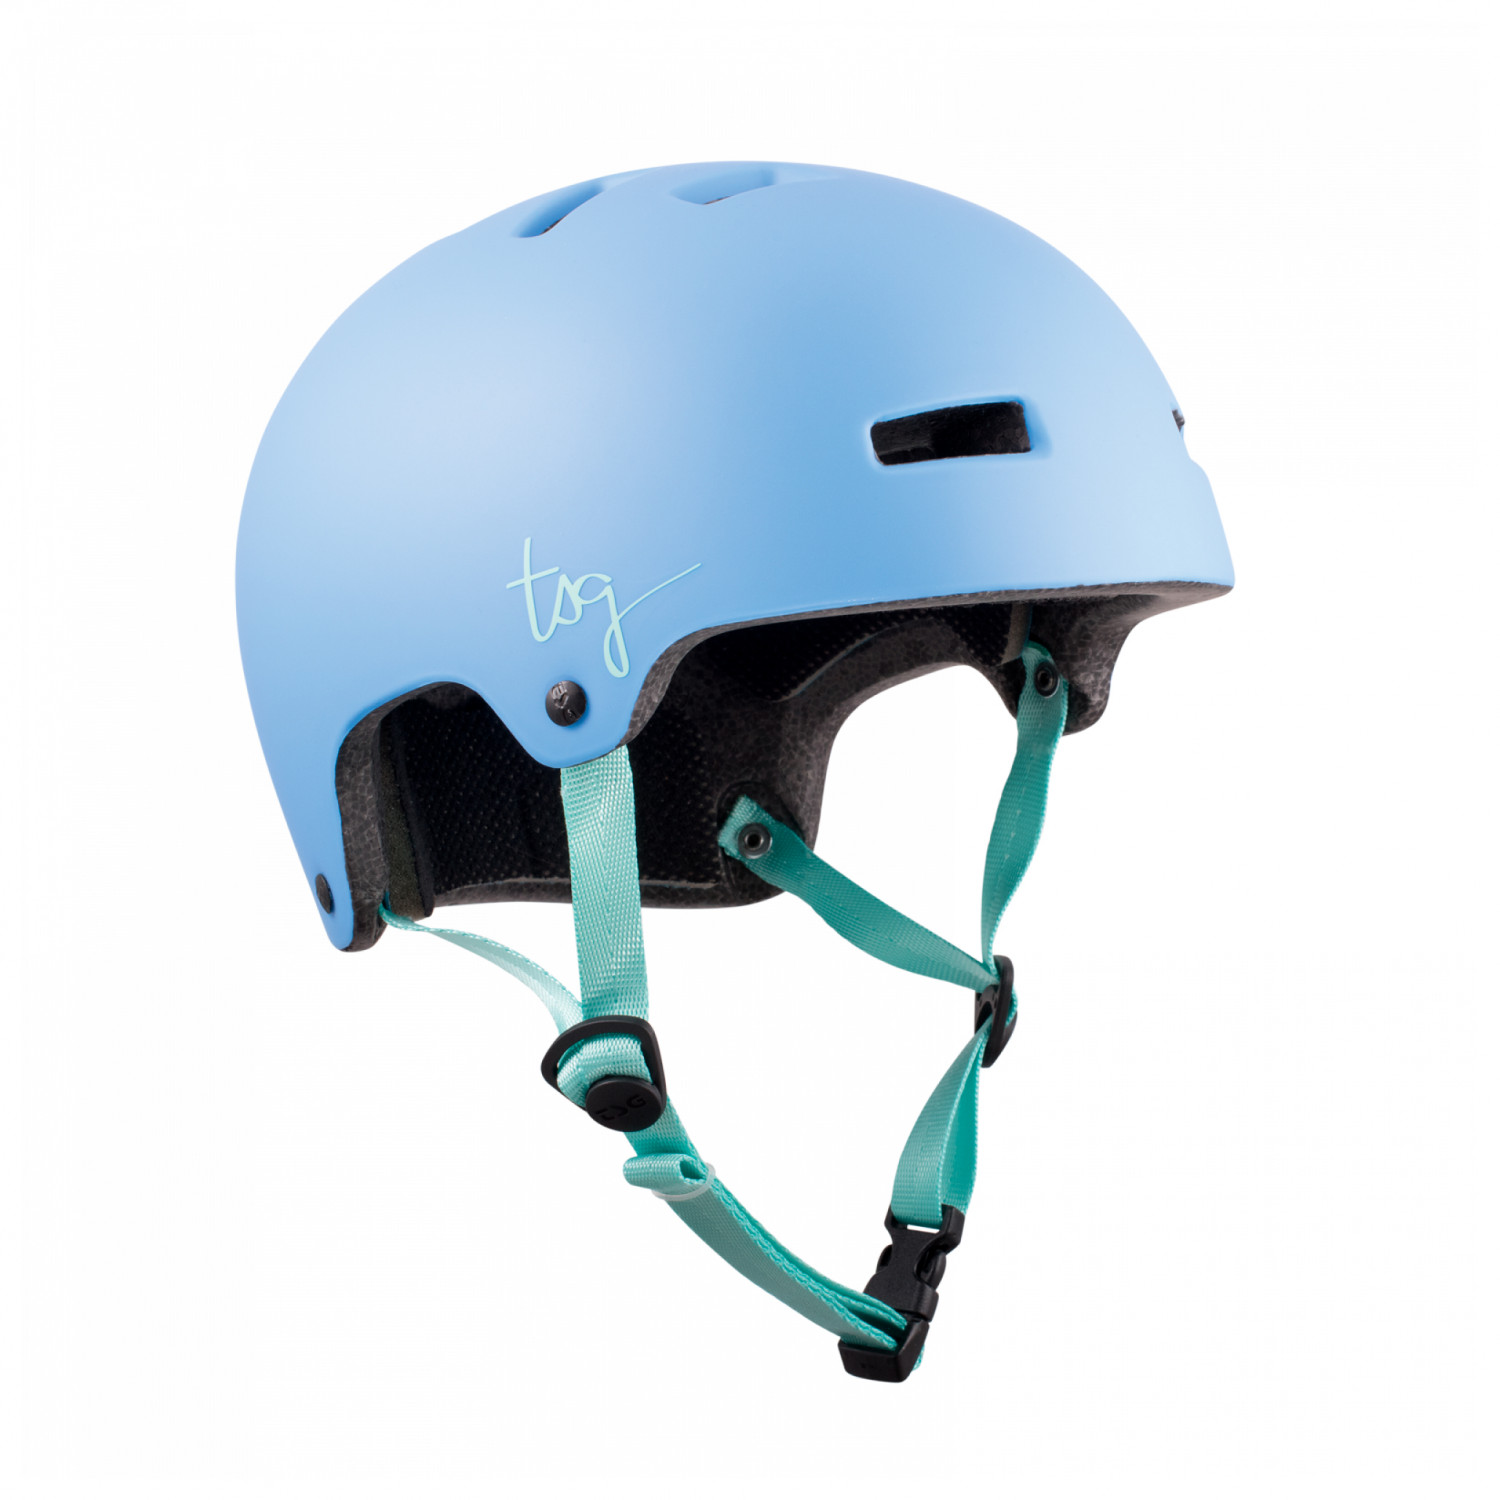 Велосипедный шлем Tsg Women's Ivy Solid Color, цвет Satin Azuro